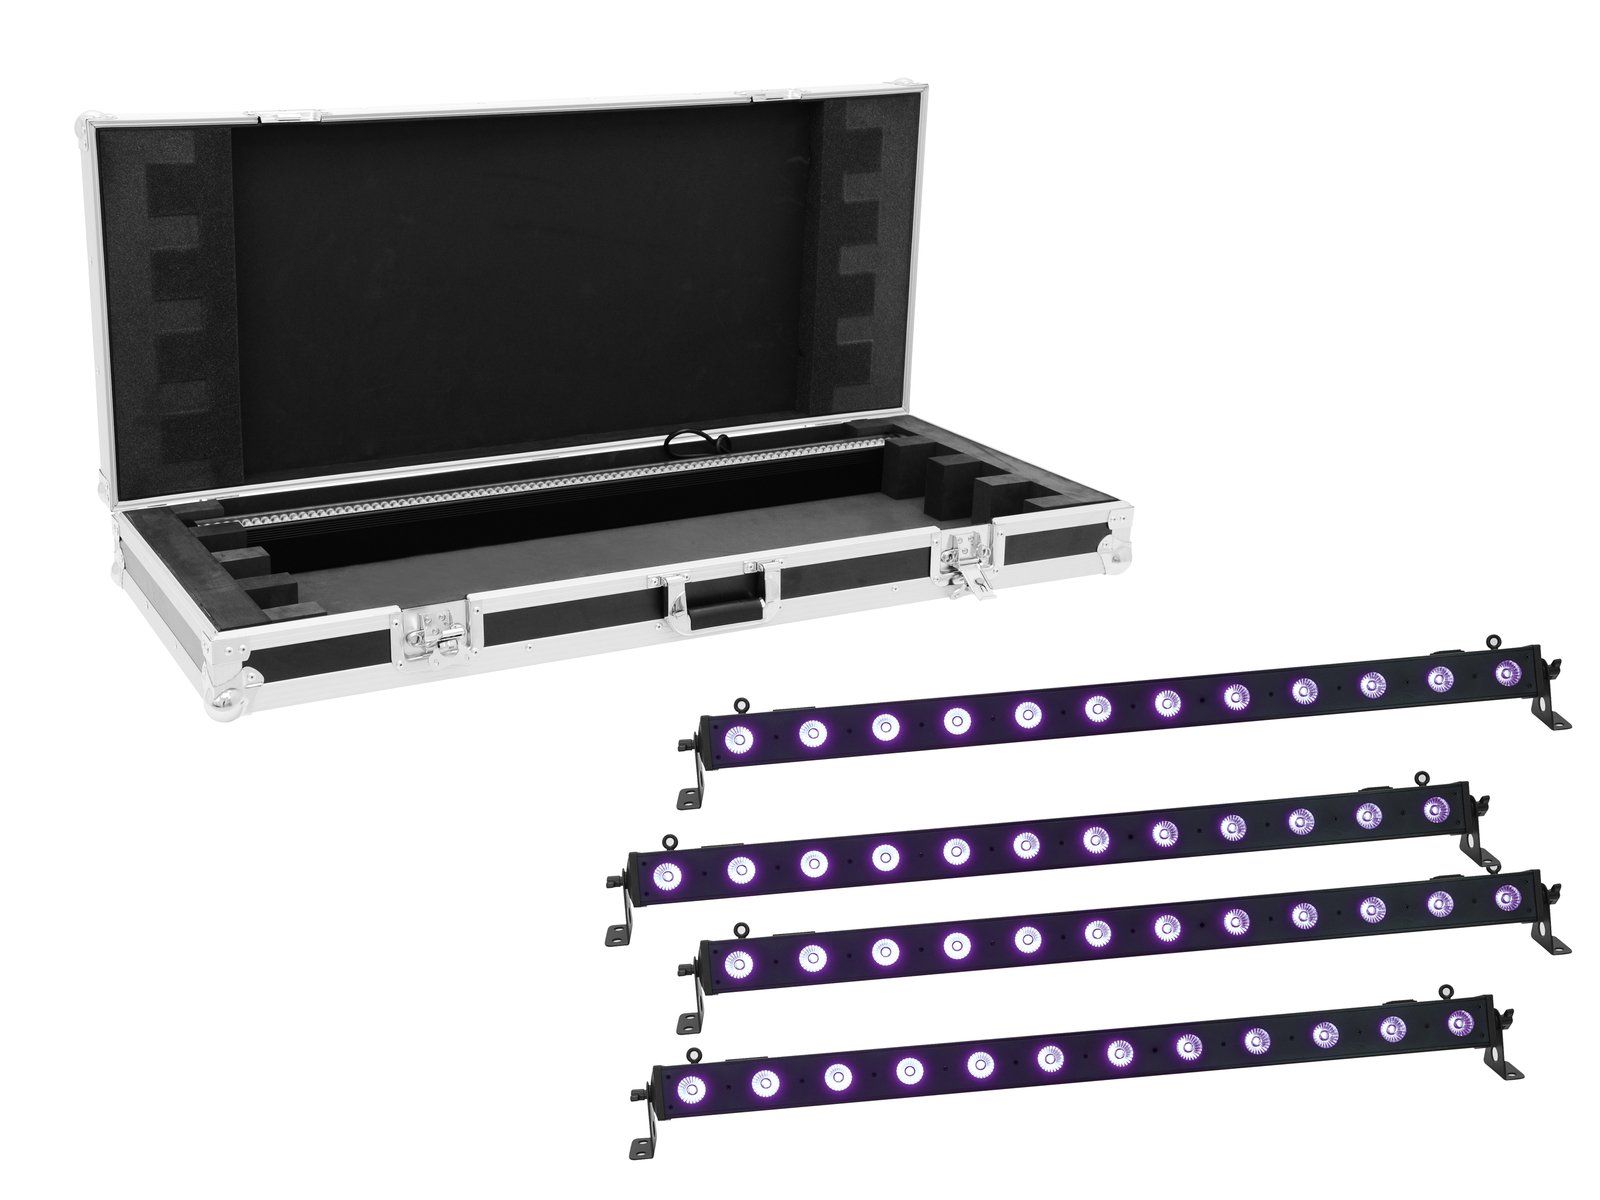 Eurolite LED BAR-12 UV Bar + Case